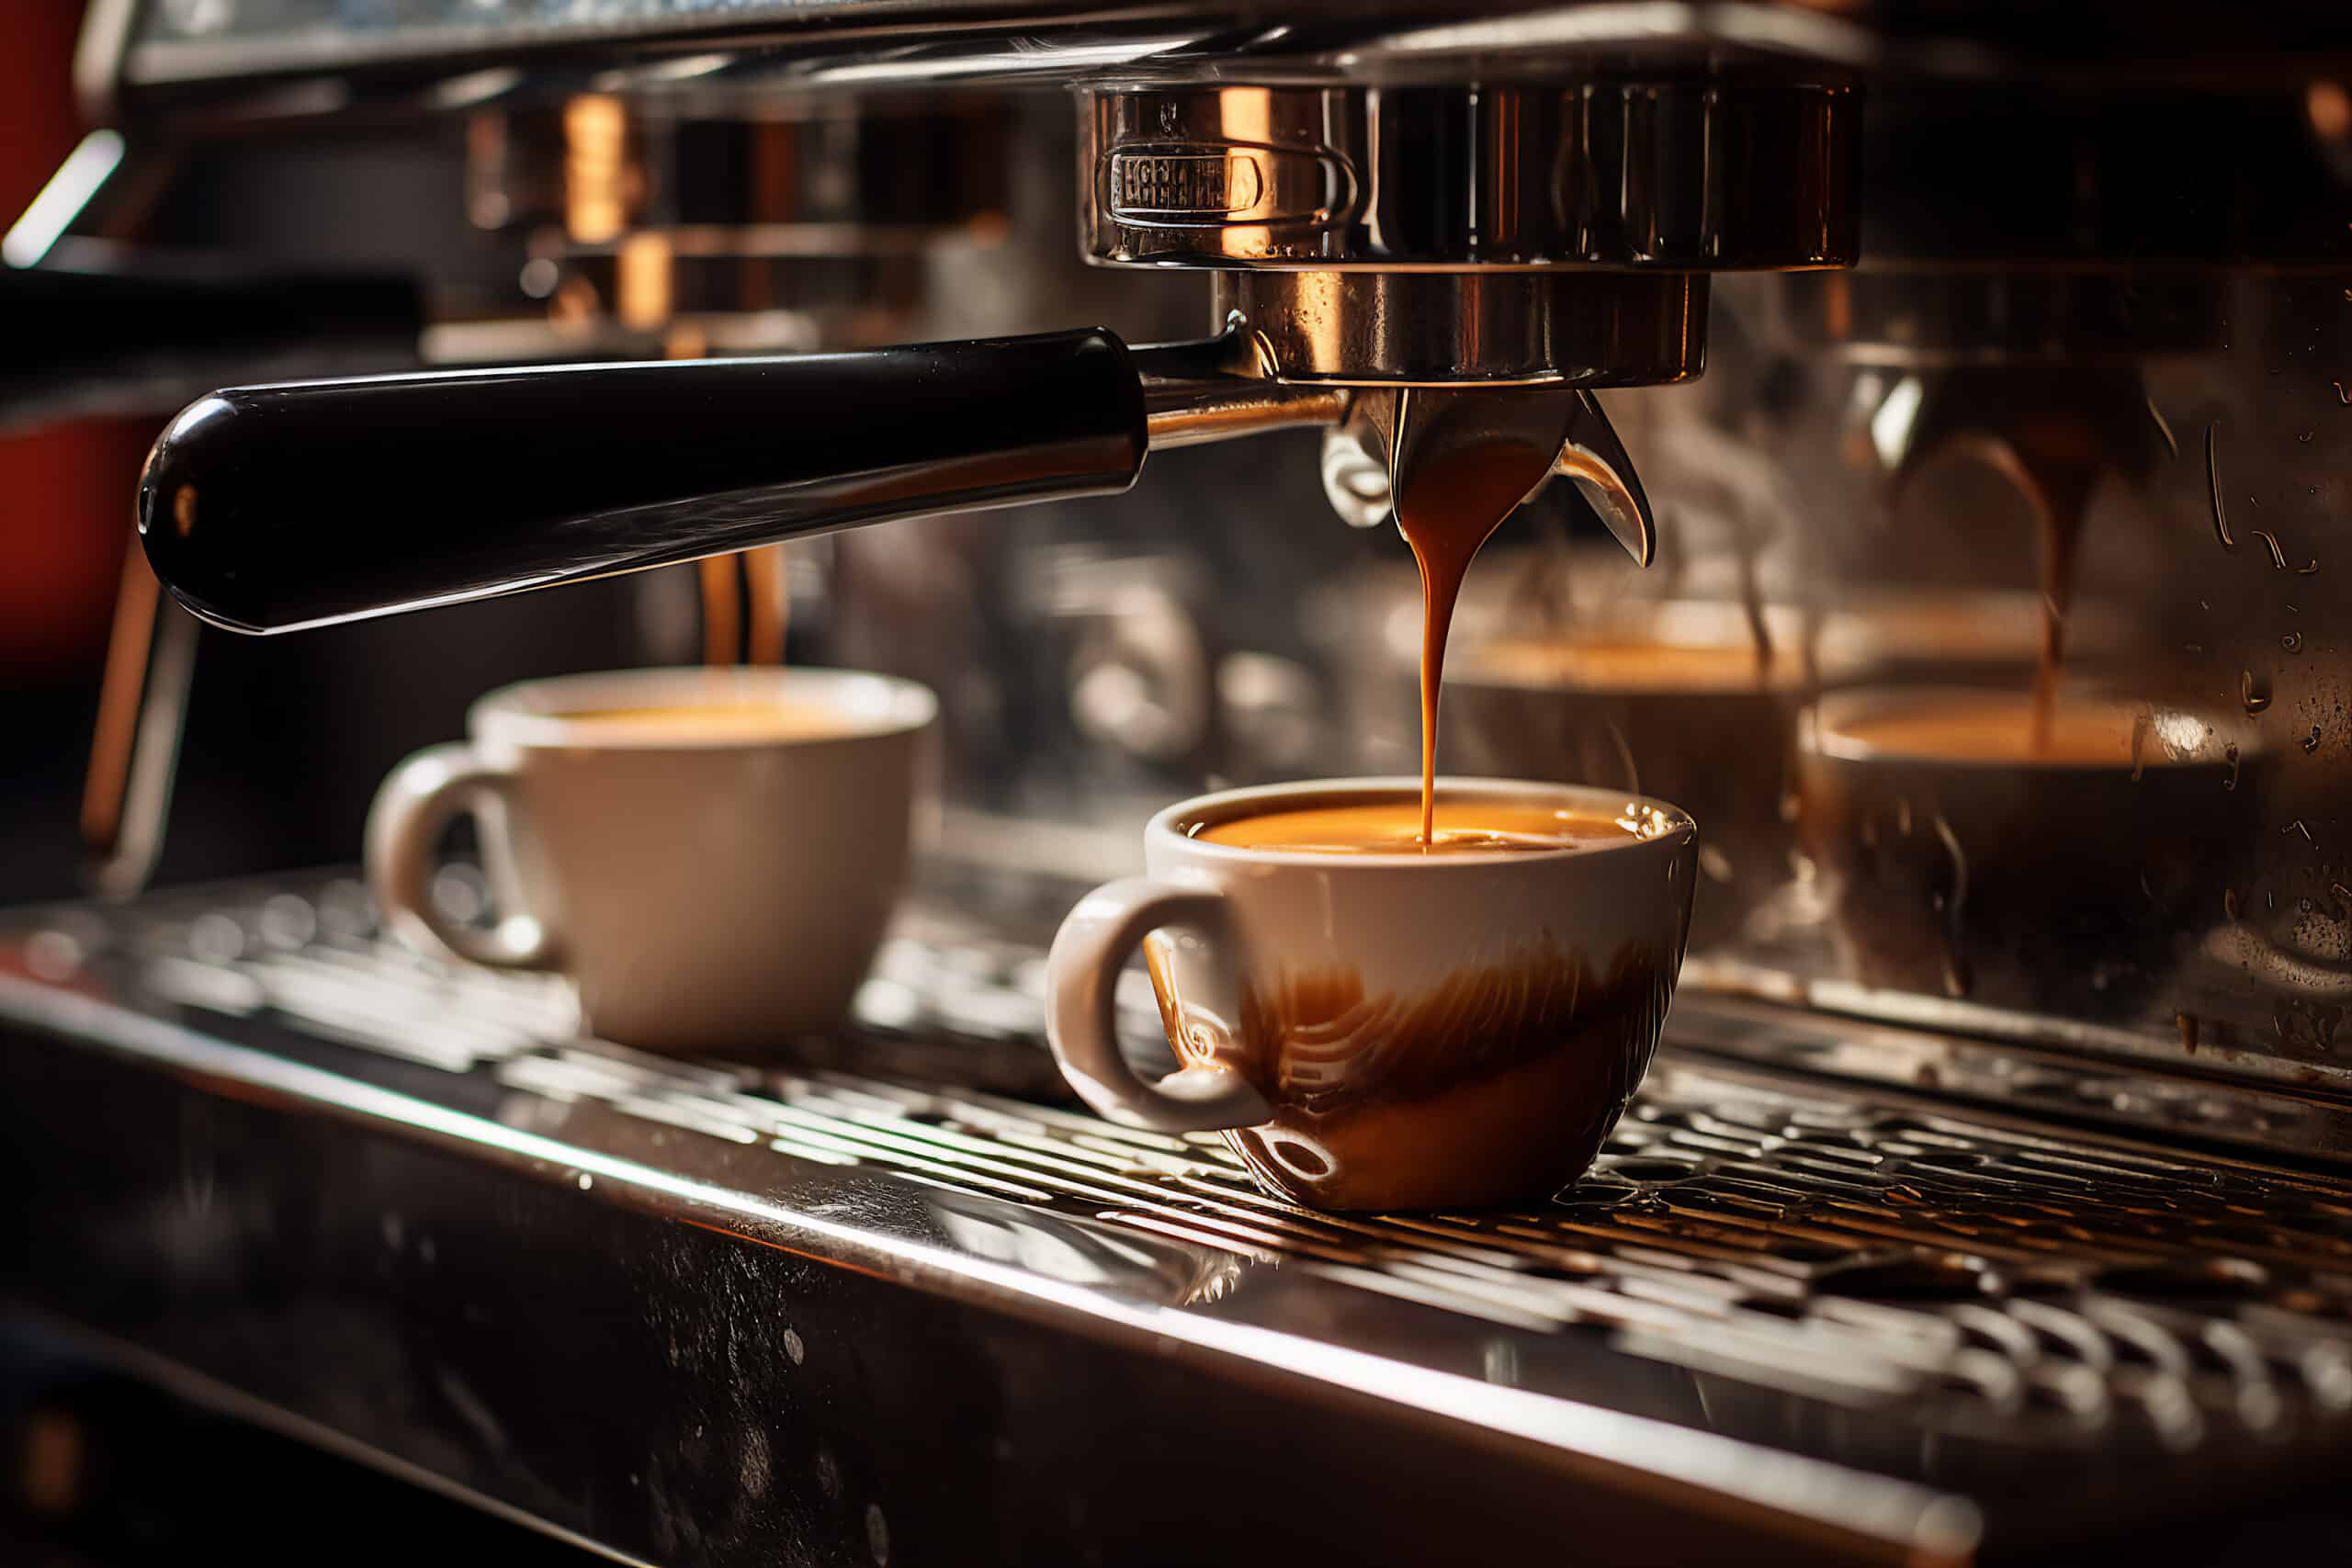 www.appr.com : How To Make Espresso Coffee With Machine?